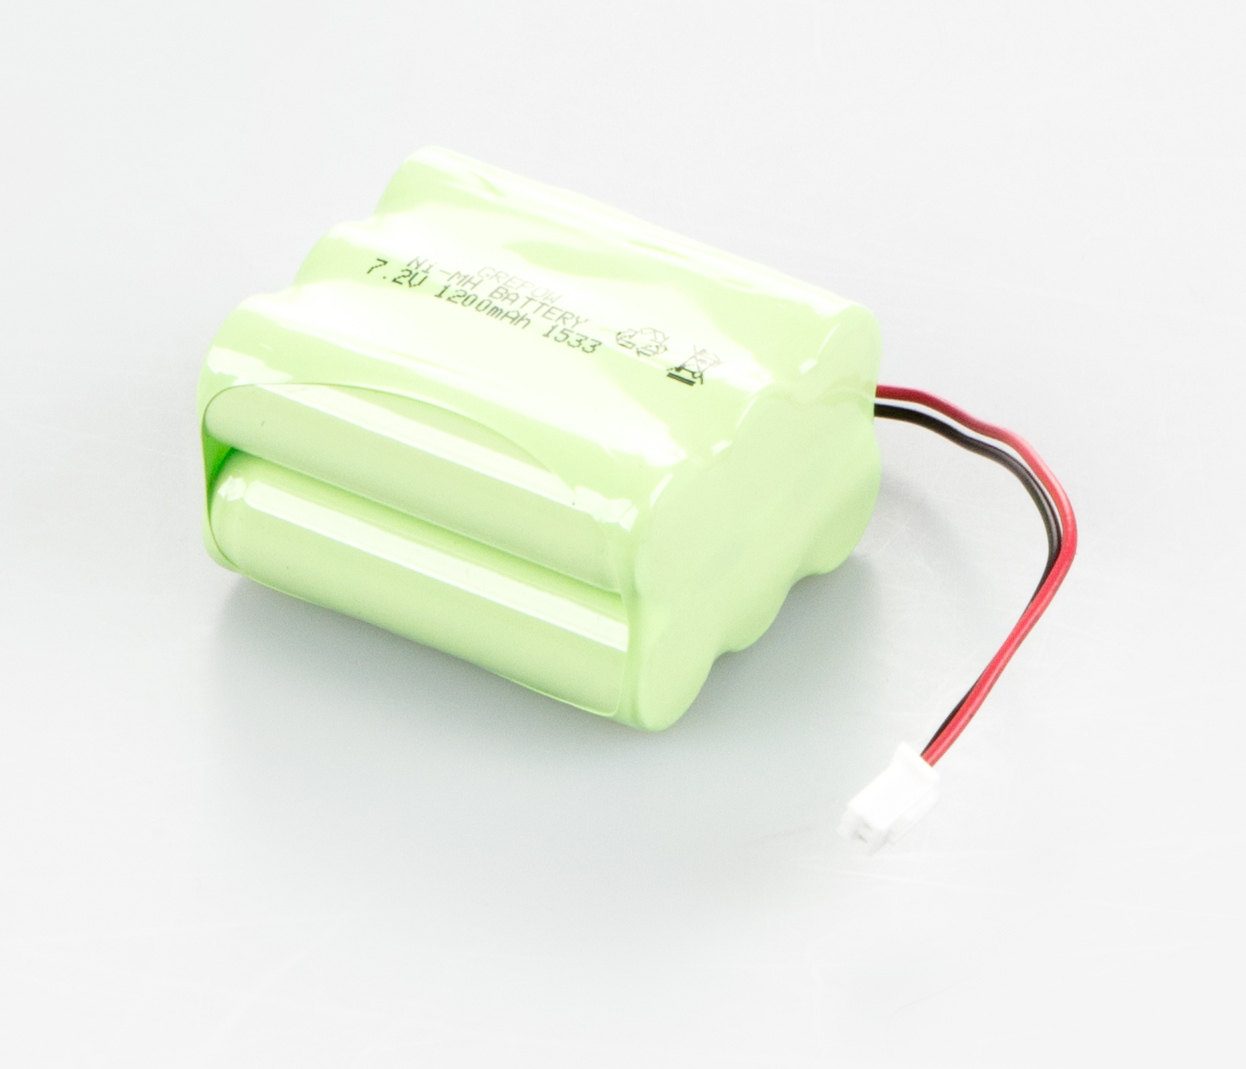 Interner Akkubetrieb auf weißem Hintergrund. Der Akku besteht aus mehreren Batterien die in hellgrüner Folie eingeschweißt sind. AUs der Hinterseite ragt ein Kabel mit dem man die Batterie an einer Waage anschließen kann.